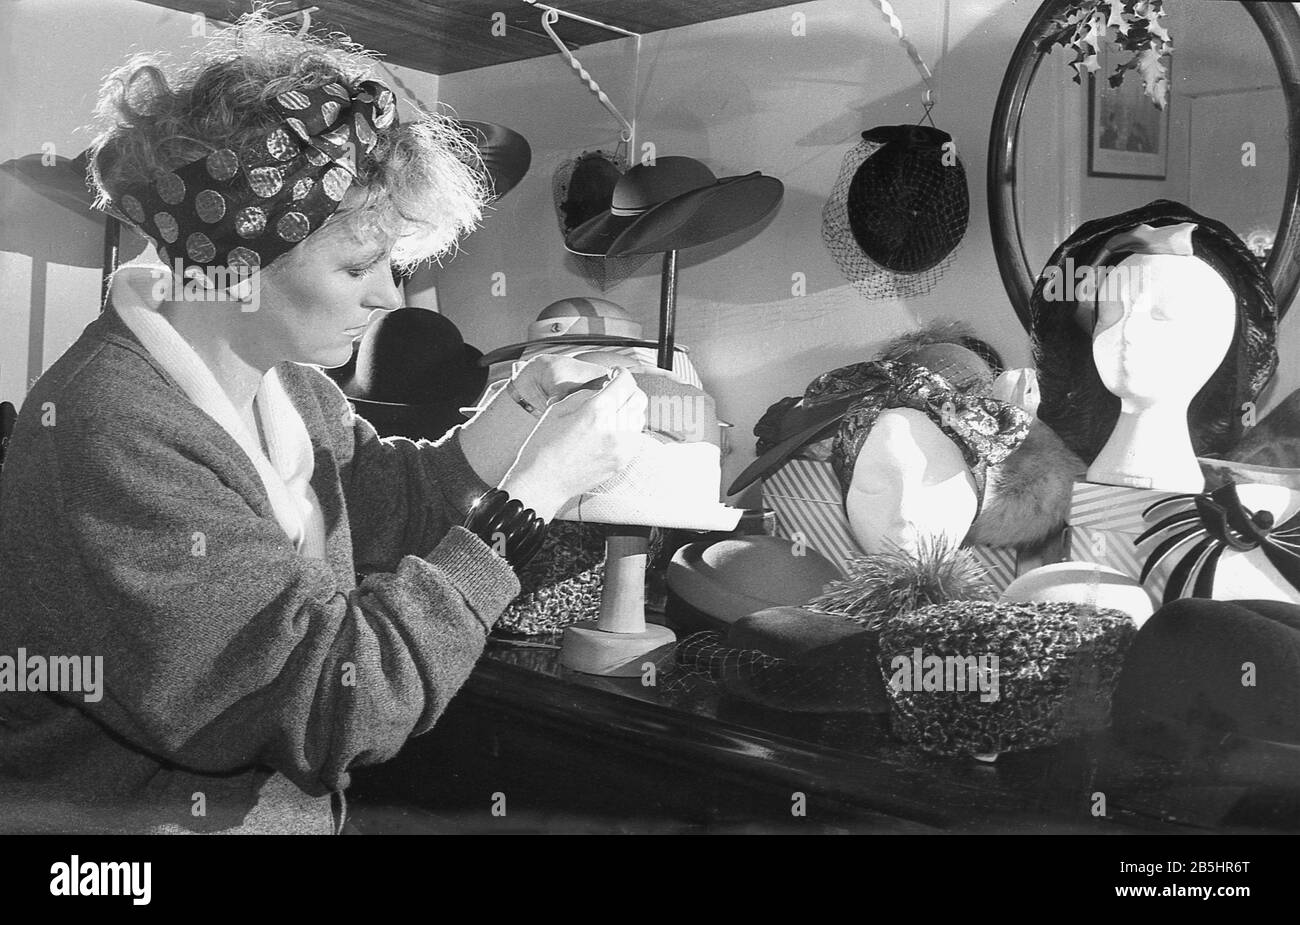 In den 1980er Jahren zeigt das Foto eine Hutmacherin oder Mühlerin, die in ihrem Handwerk sitzt, mit einer Tischausstellung ihrer Kopfbekleidungskreationen in England, Großbritannien. Die Mühlerei wird oft von unabhängigen Arbeitern betrieben, Einzelhändlern, die die Design- und kreativen Aspekte der maßgeschneiderten Hutmacherei genießen. Stockfoto